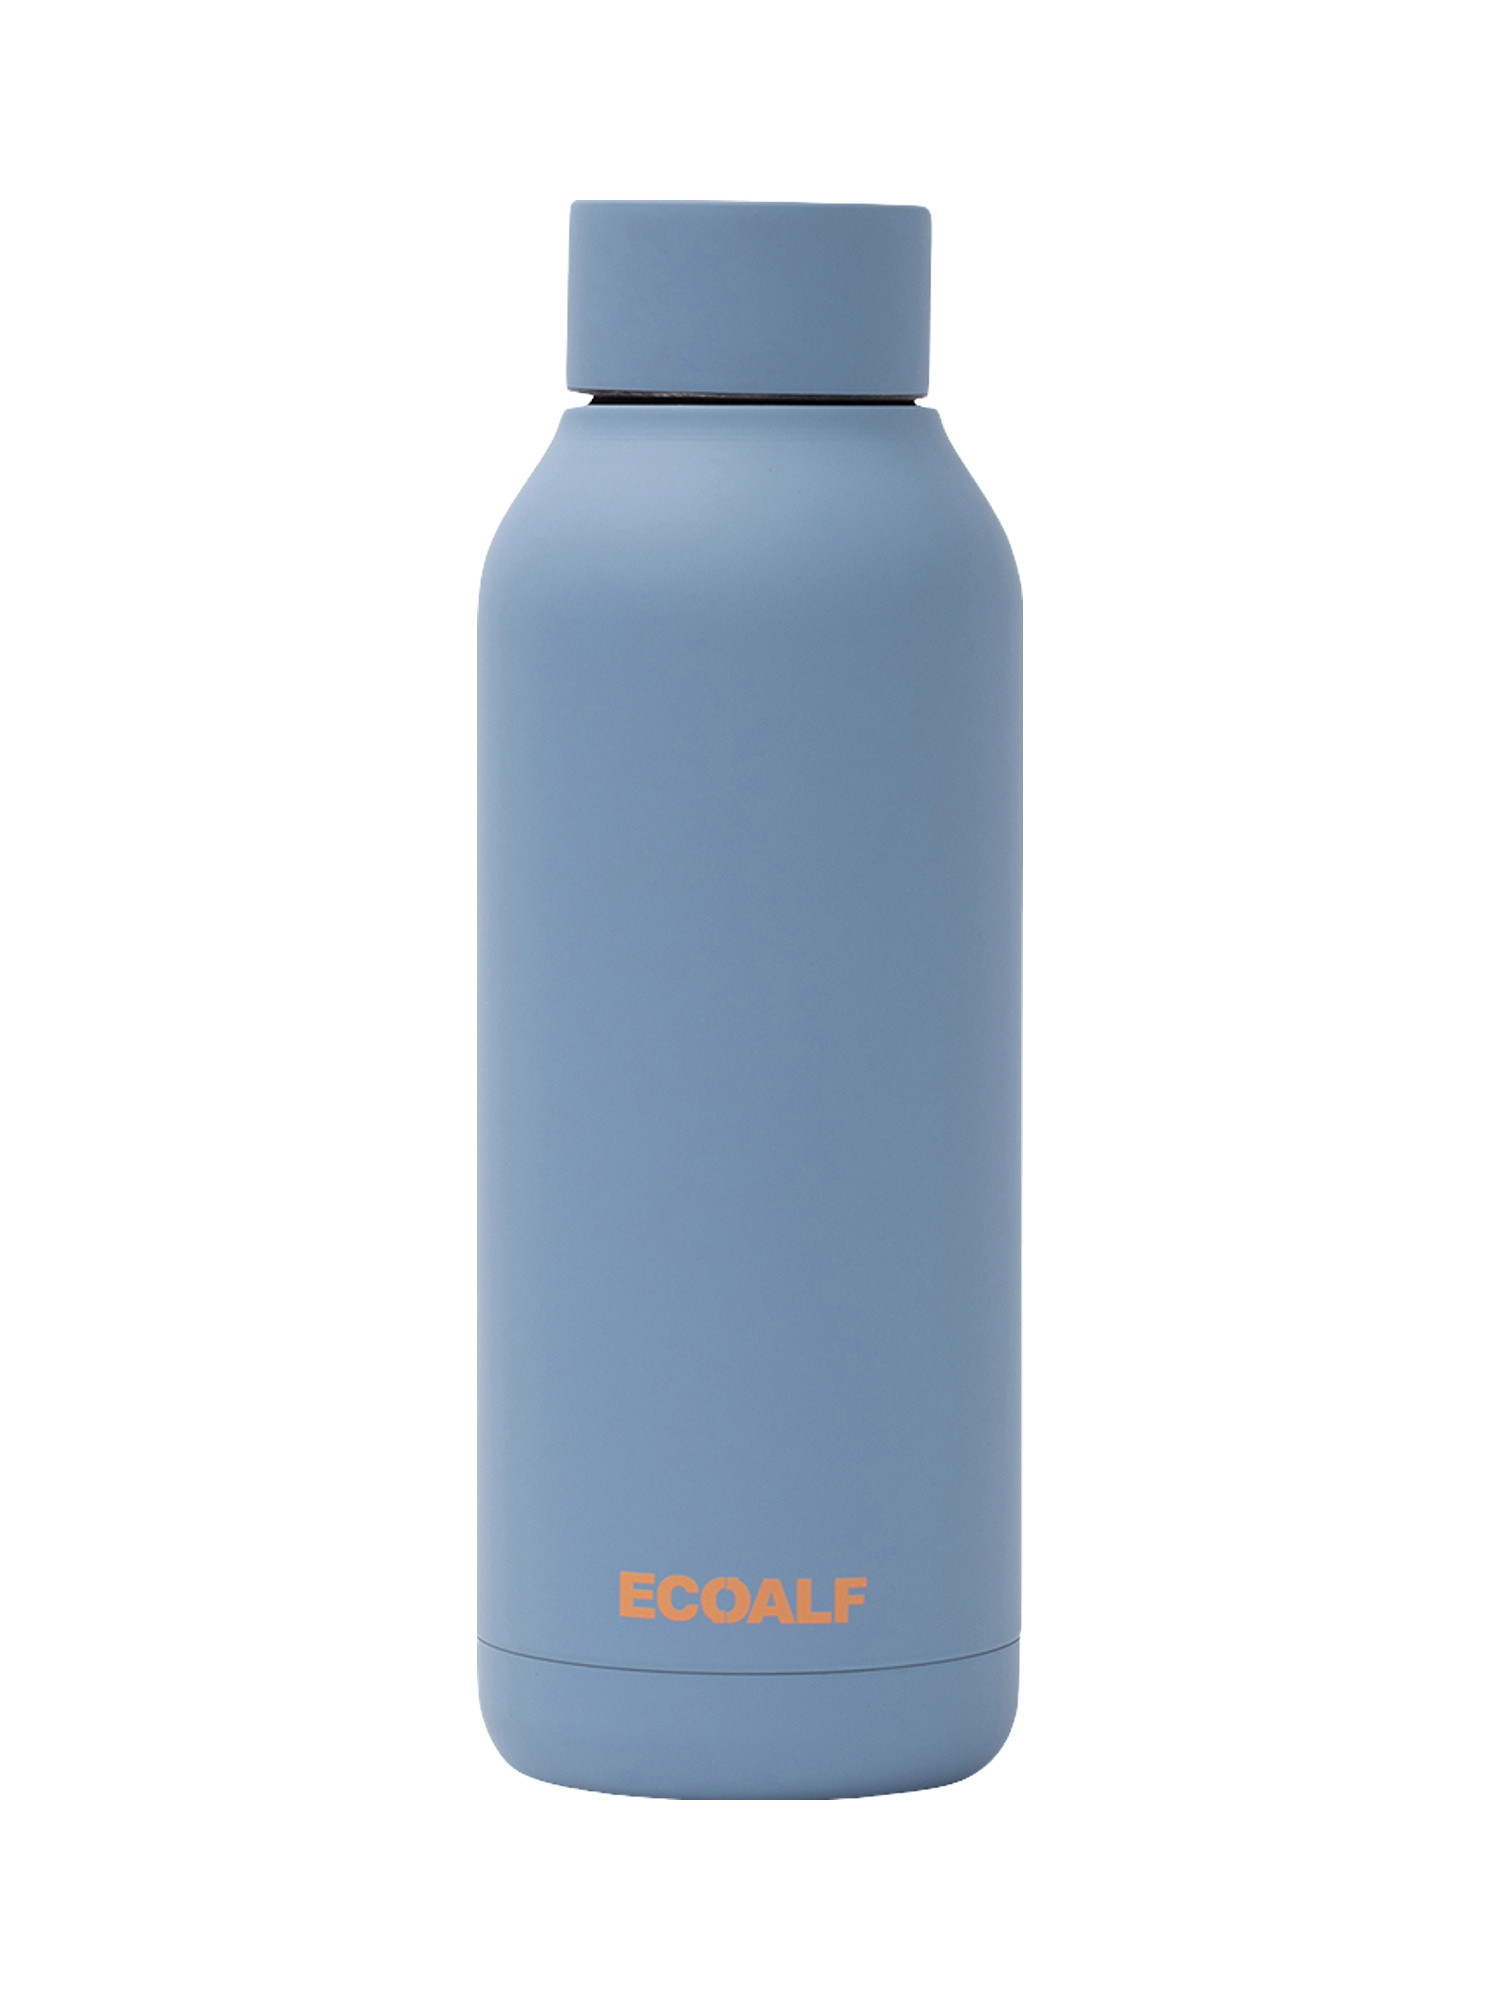 Ecoalf - Bottle with writing, Light Blue, large image number 1